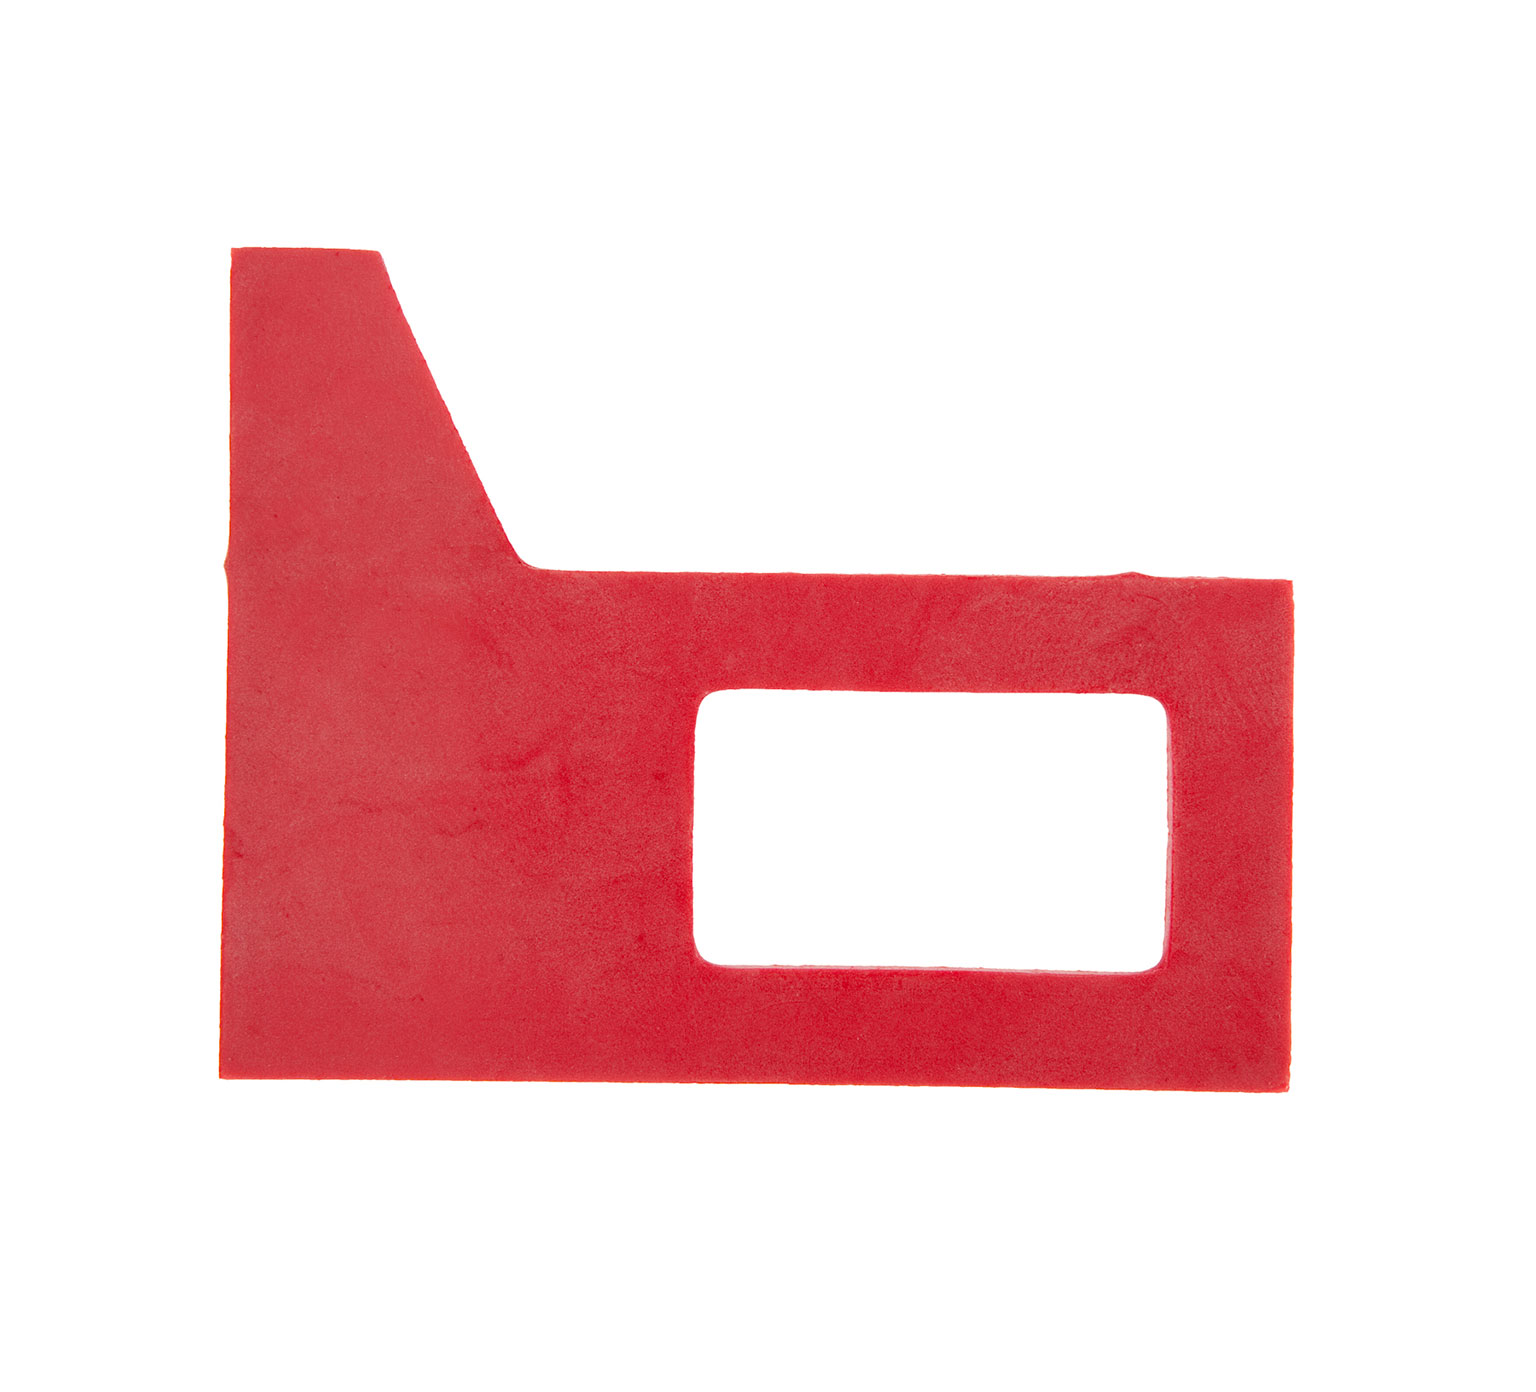 83874 Joint de raclette en caoutchouc rouge Dura-Shield alt 1